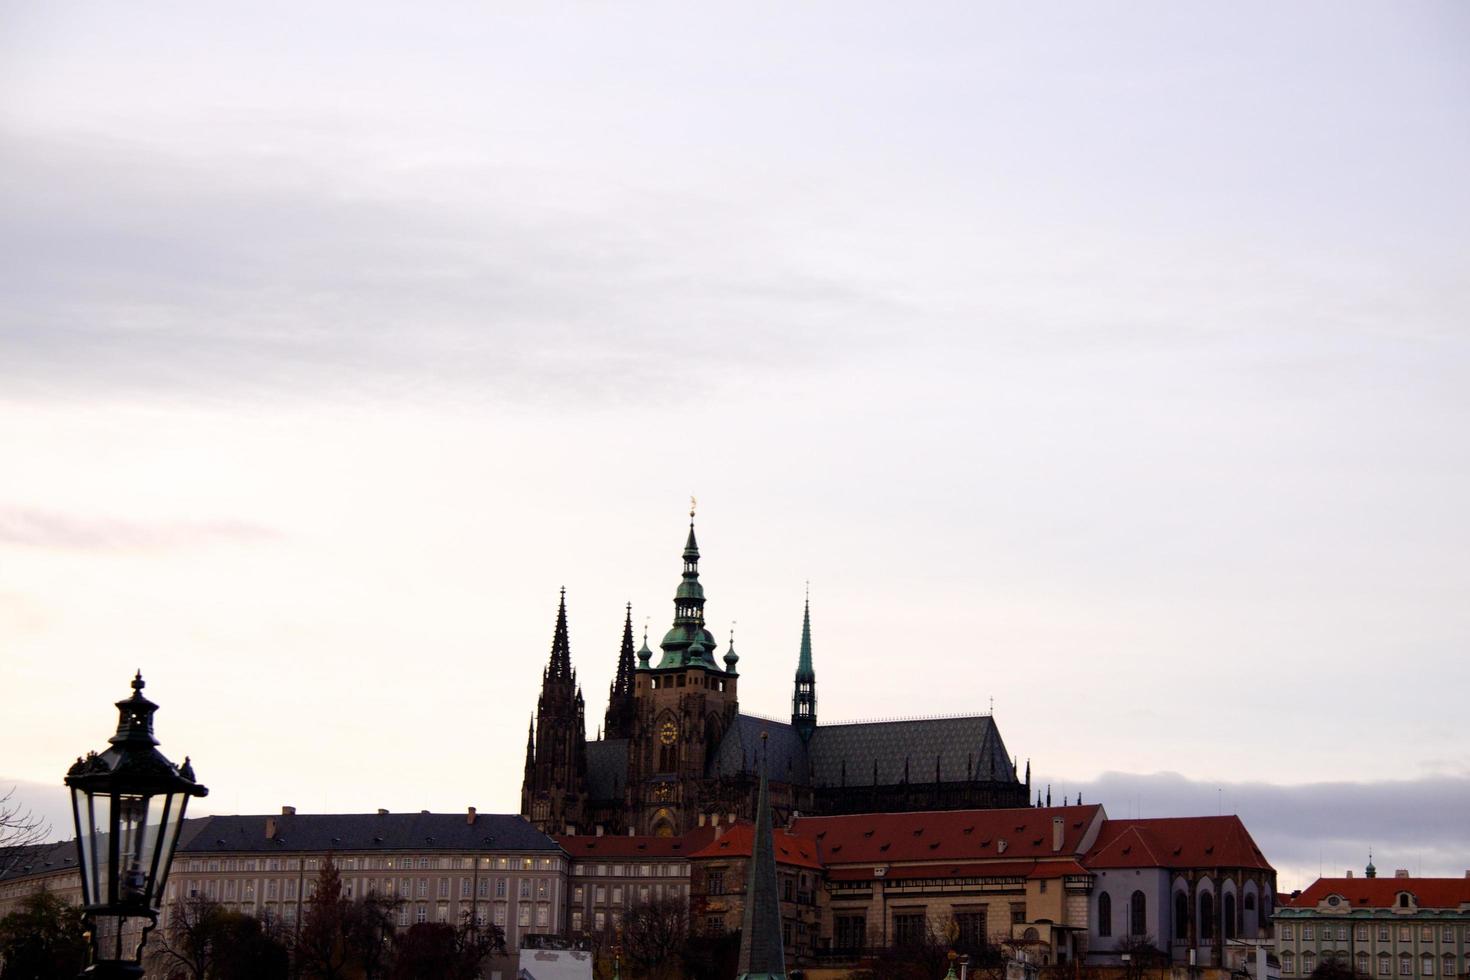 gamla Prags stadsutsikt foto